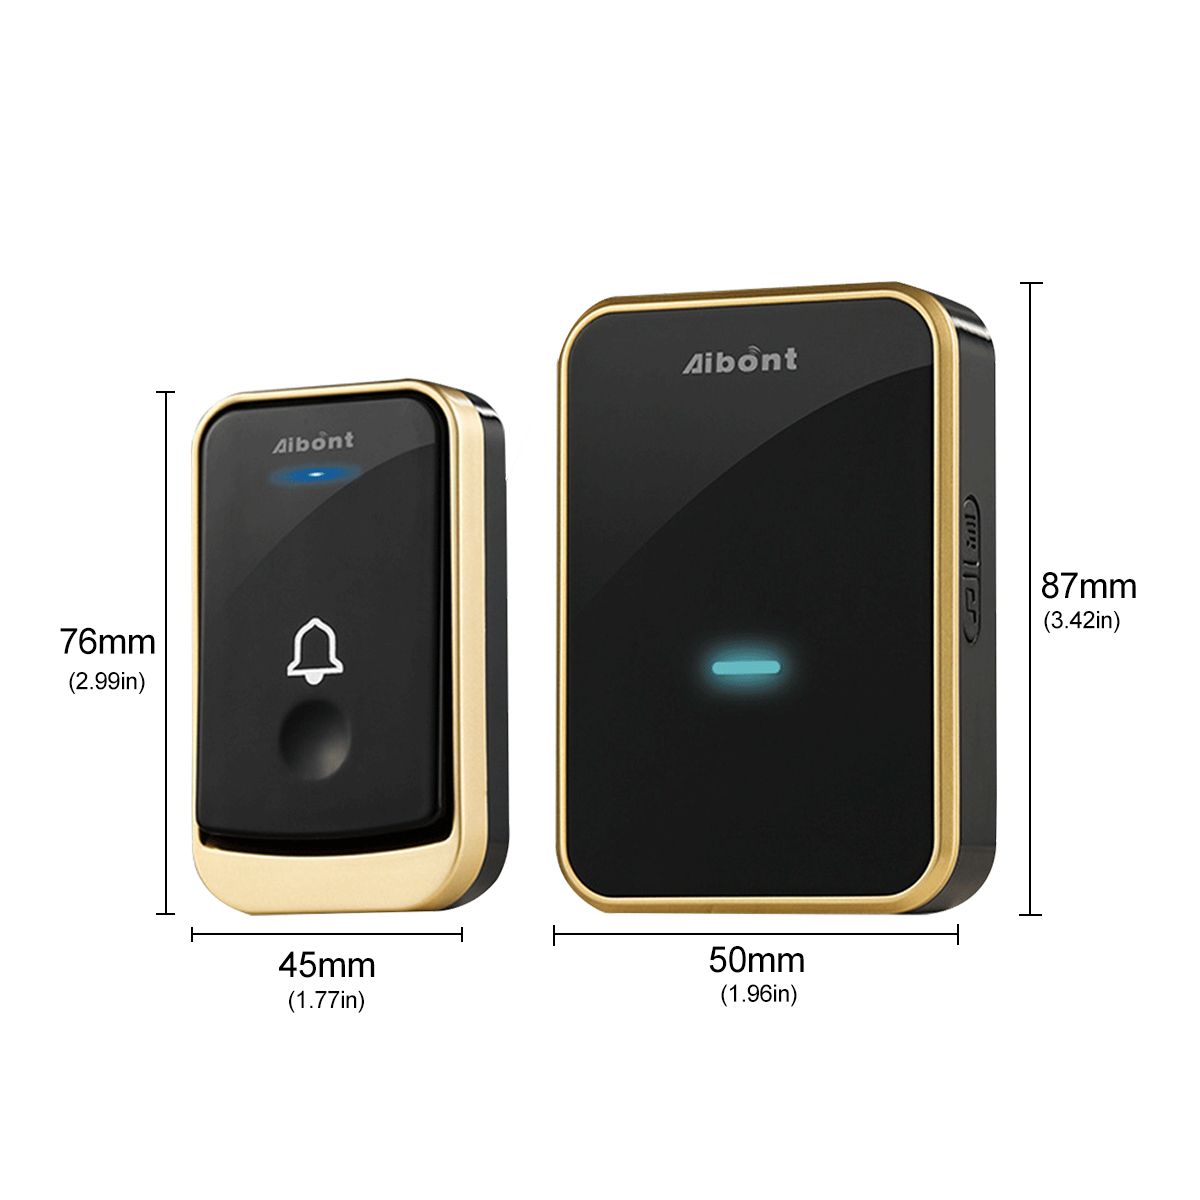 Smart-Wireless-Doorbell-45-Songs-Ringtones--200m-Transmission-Door-Bell-1729994